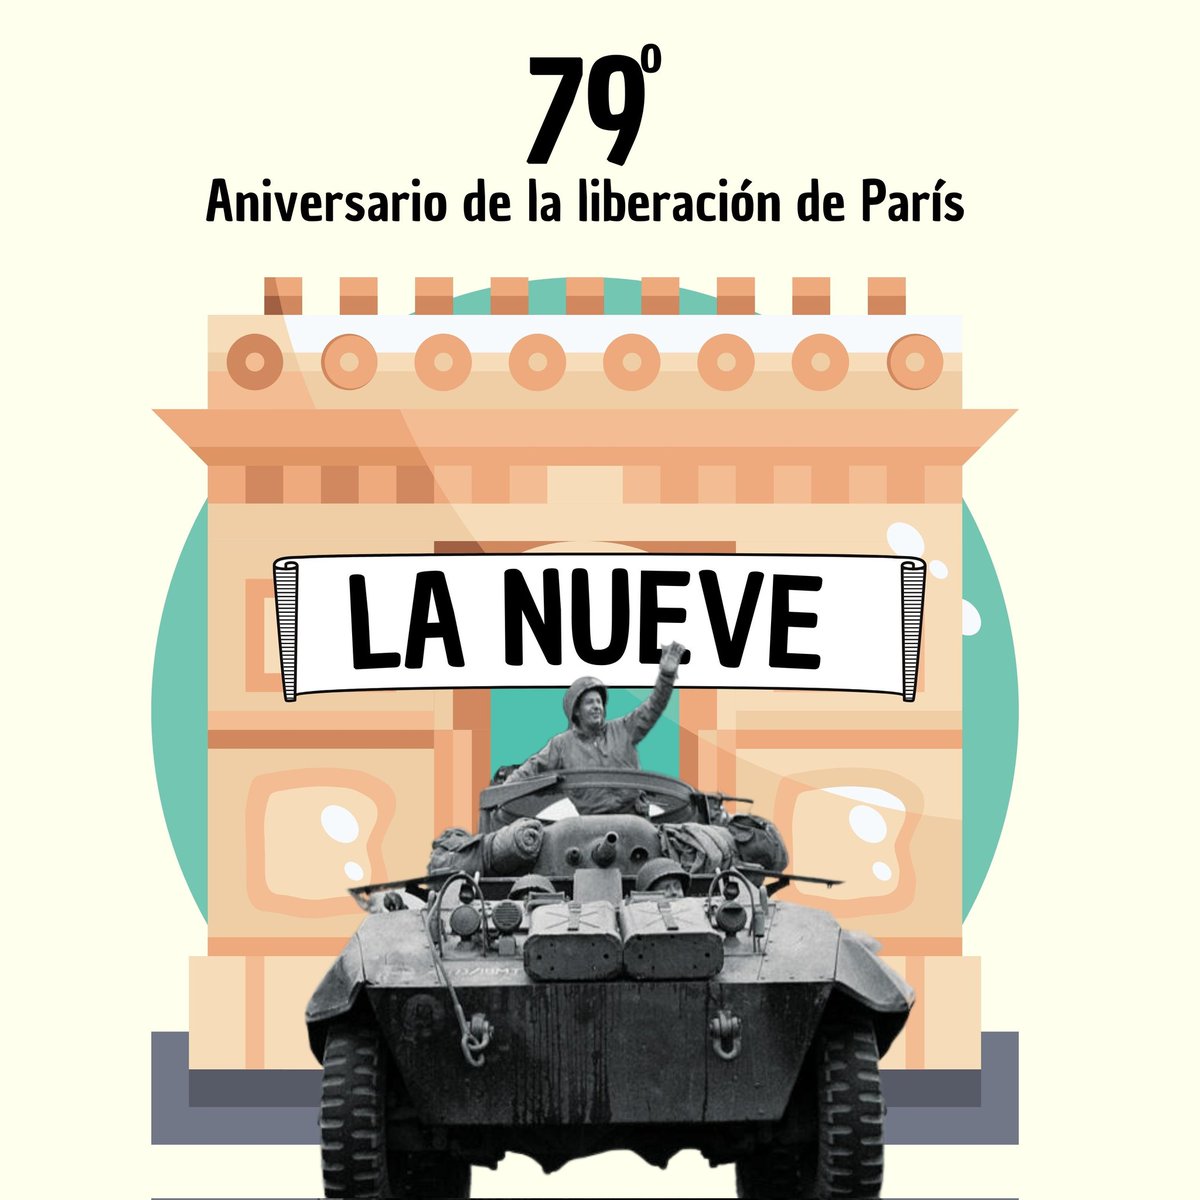 Hoy, en el 79 Aniversario de la liberación de París, recordamos a La Nueve. Esta unidad formada por españoles tuvo un papel clave en el desenlace de la II Guerra Mundial, trascendental para alcanzar la Europa libre y democrática que somos hoy. #MemoriaEsDemocracia